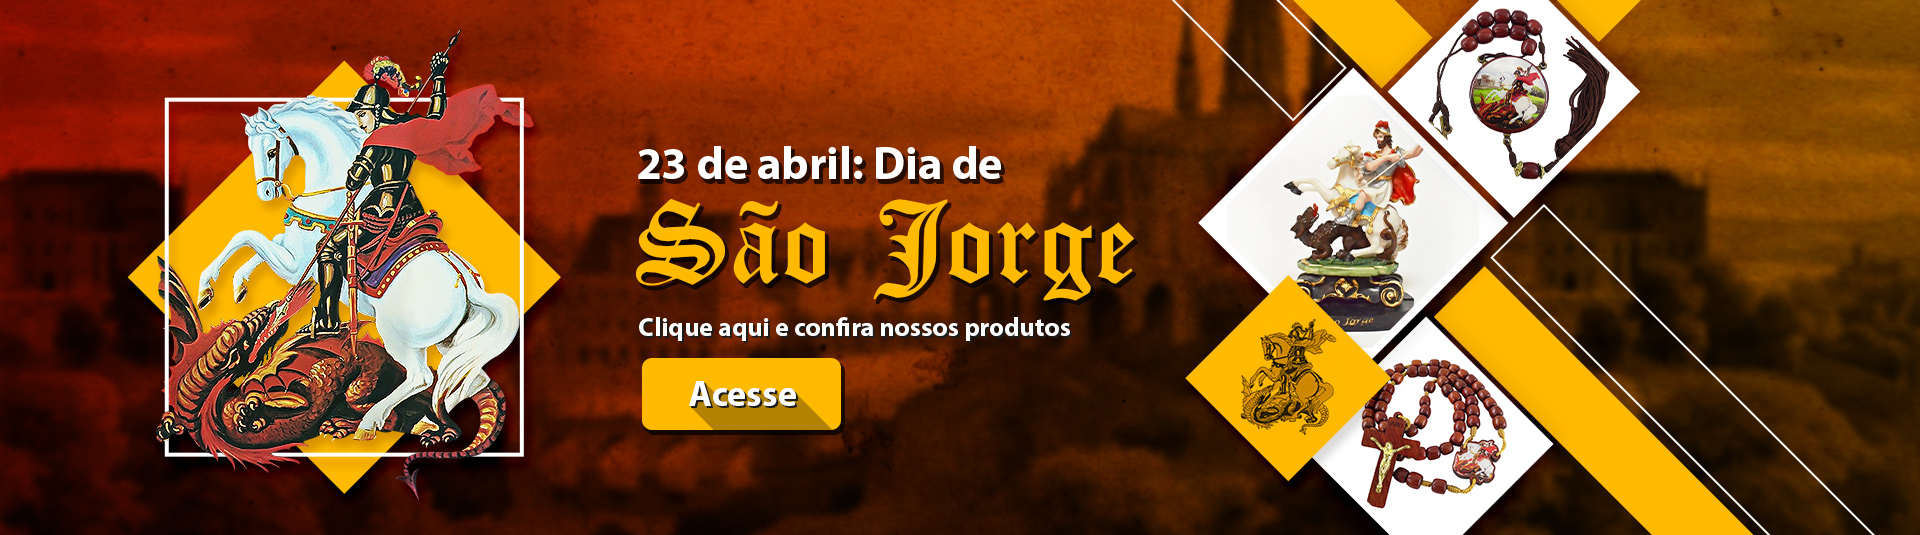 Banner São Jorge - 23 de abril